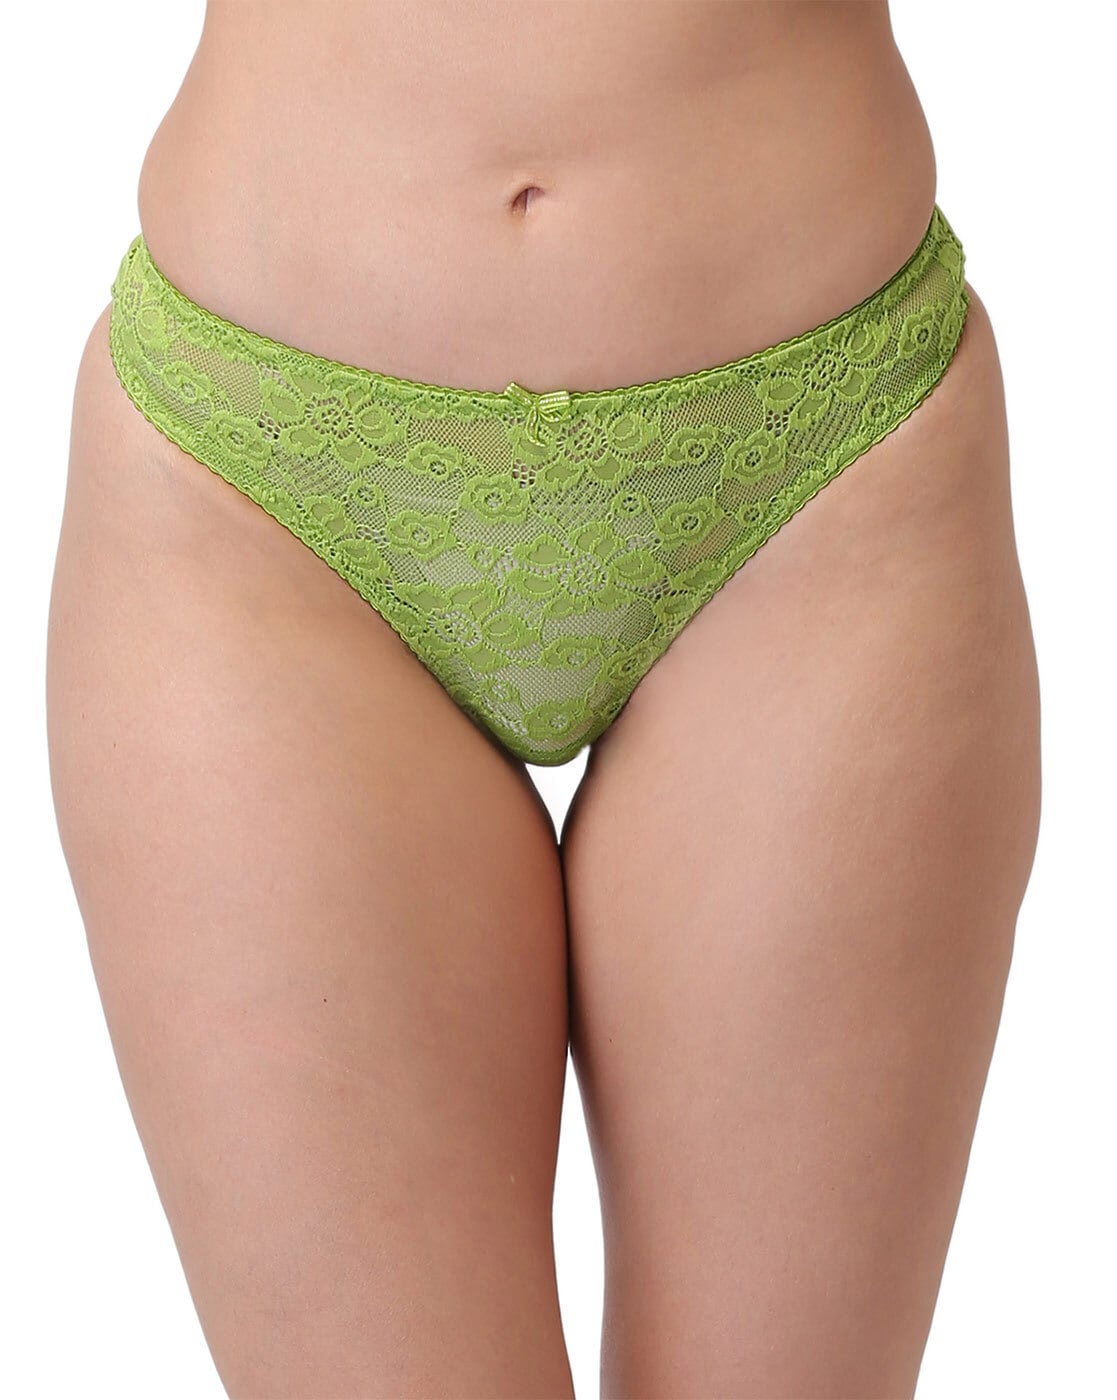 Buy Green Panties for Women by Lotusleaf Online